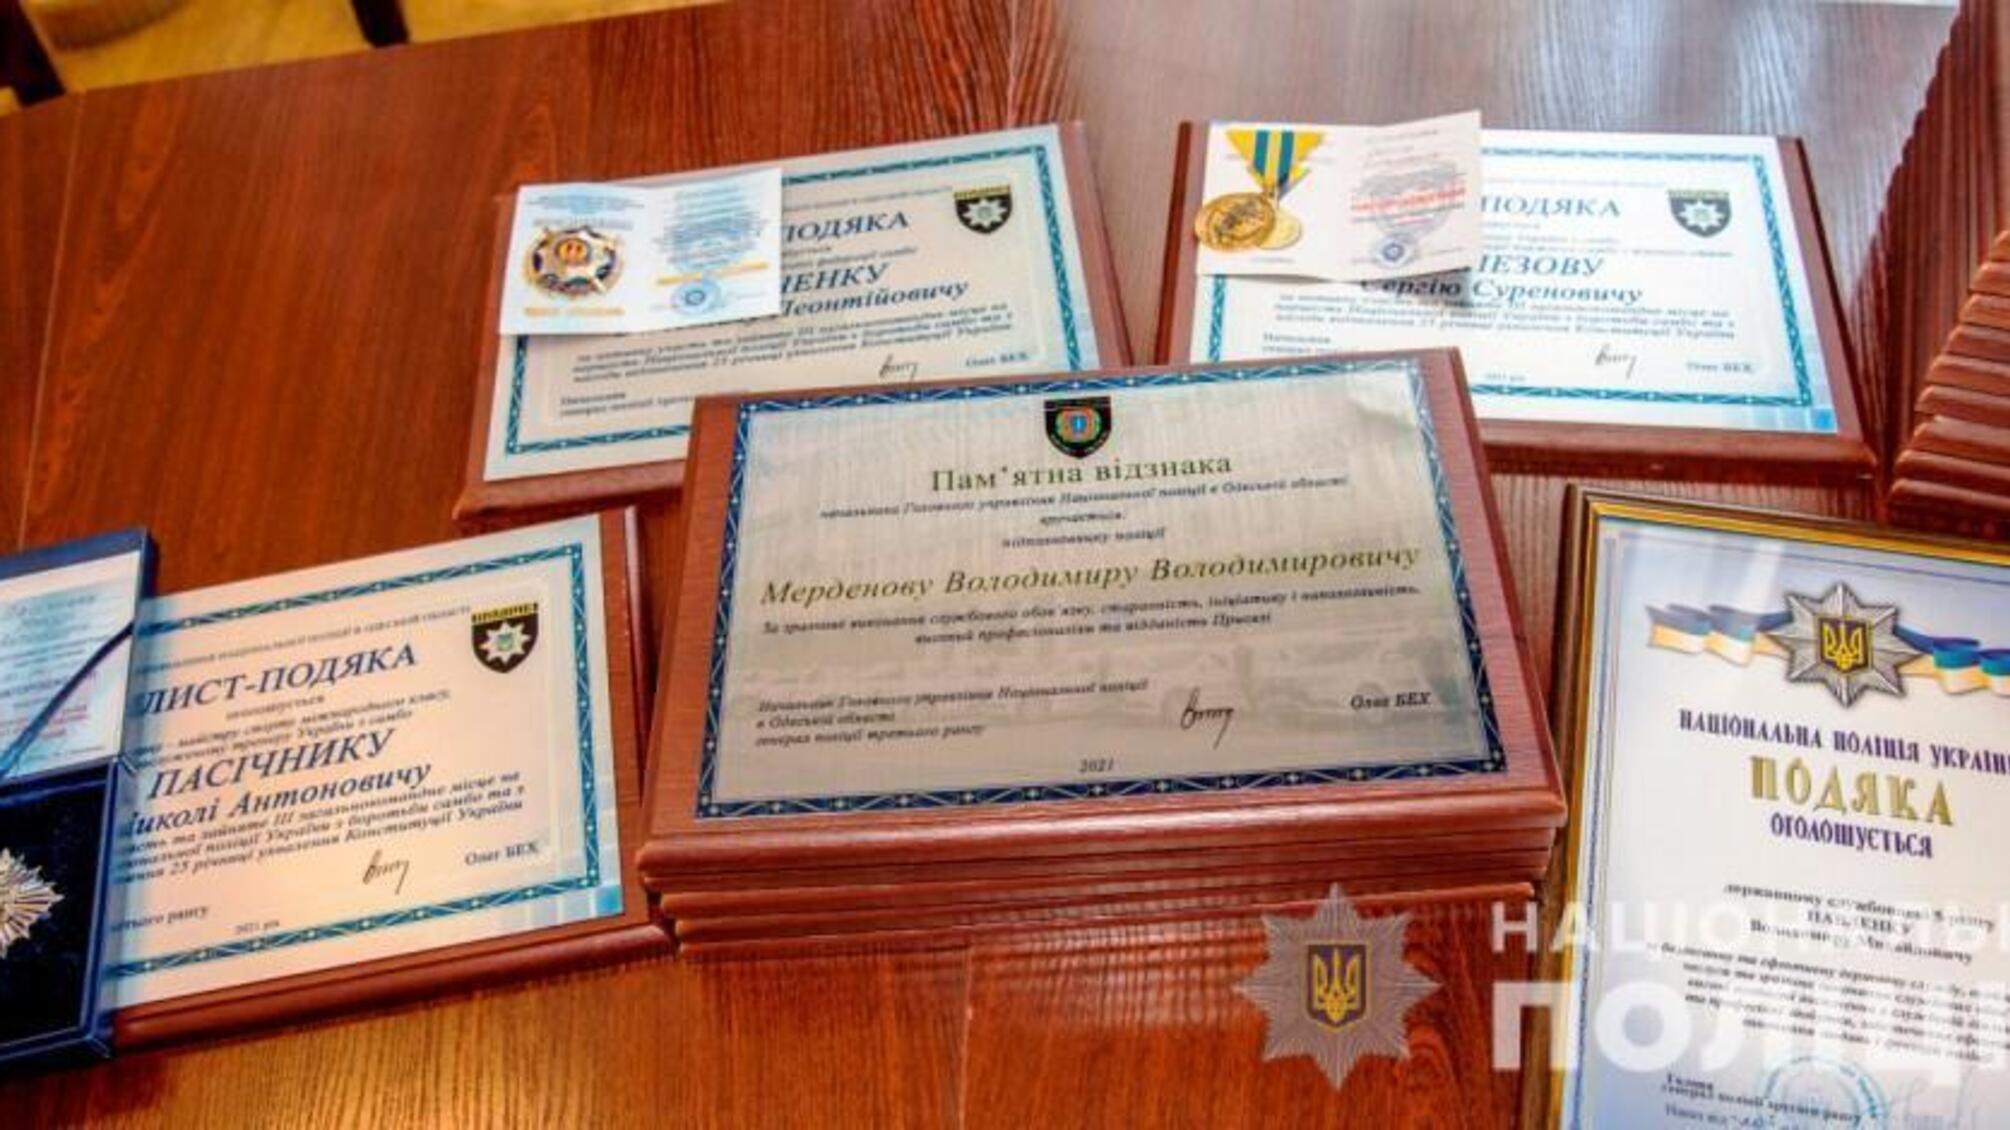 Очільник поліції Одещини Олег Бех вручив відзнаки кращим працівникам, ветеранам правоохоронних органів та спортсменам